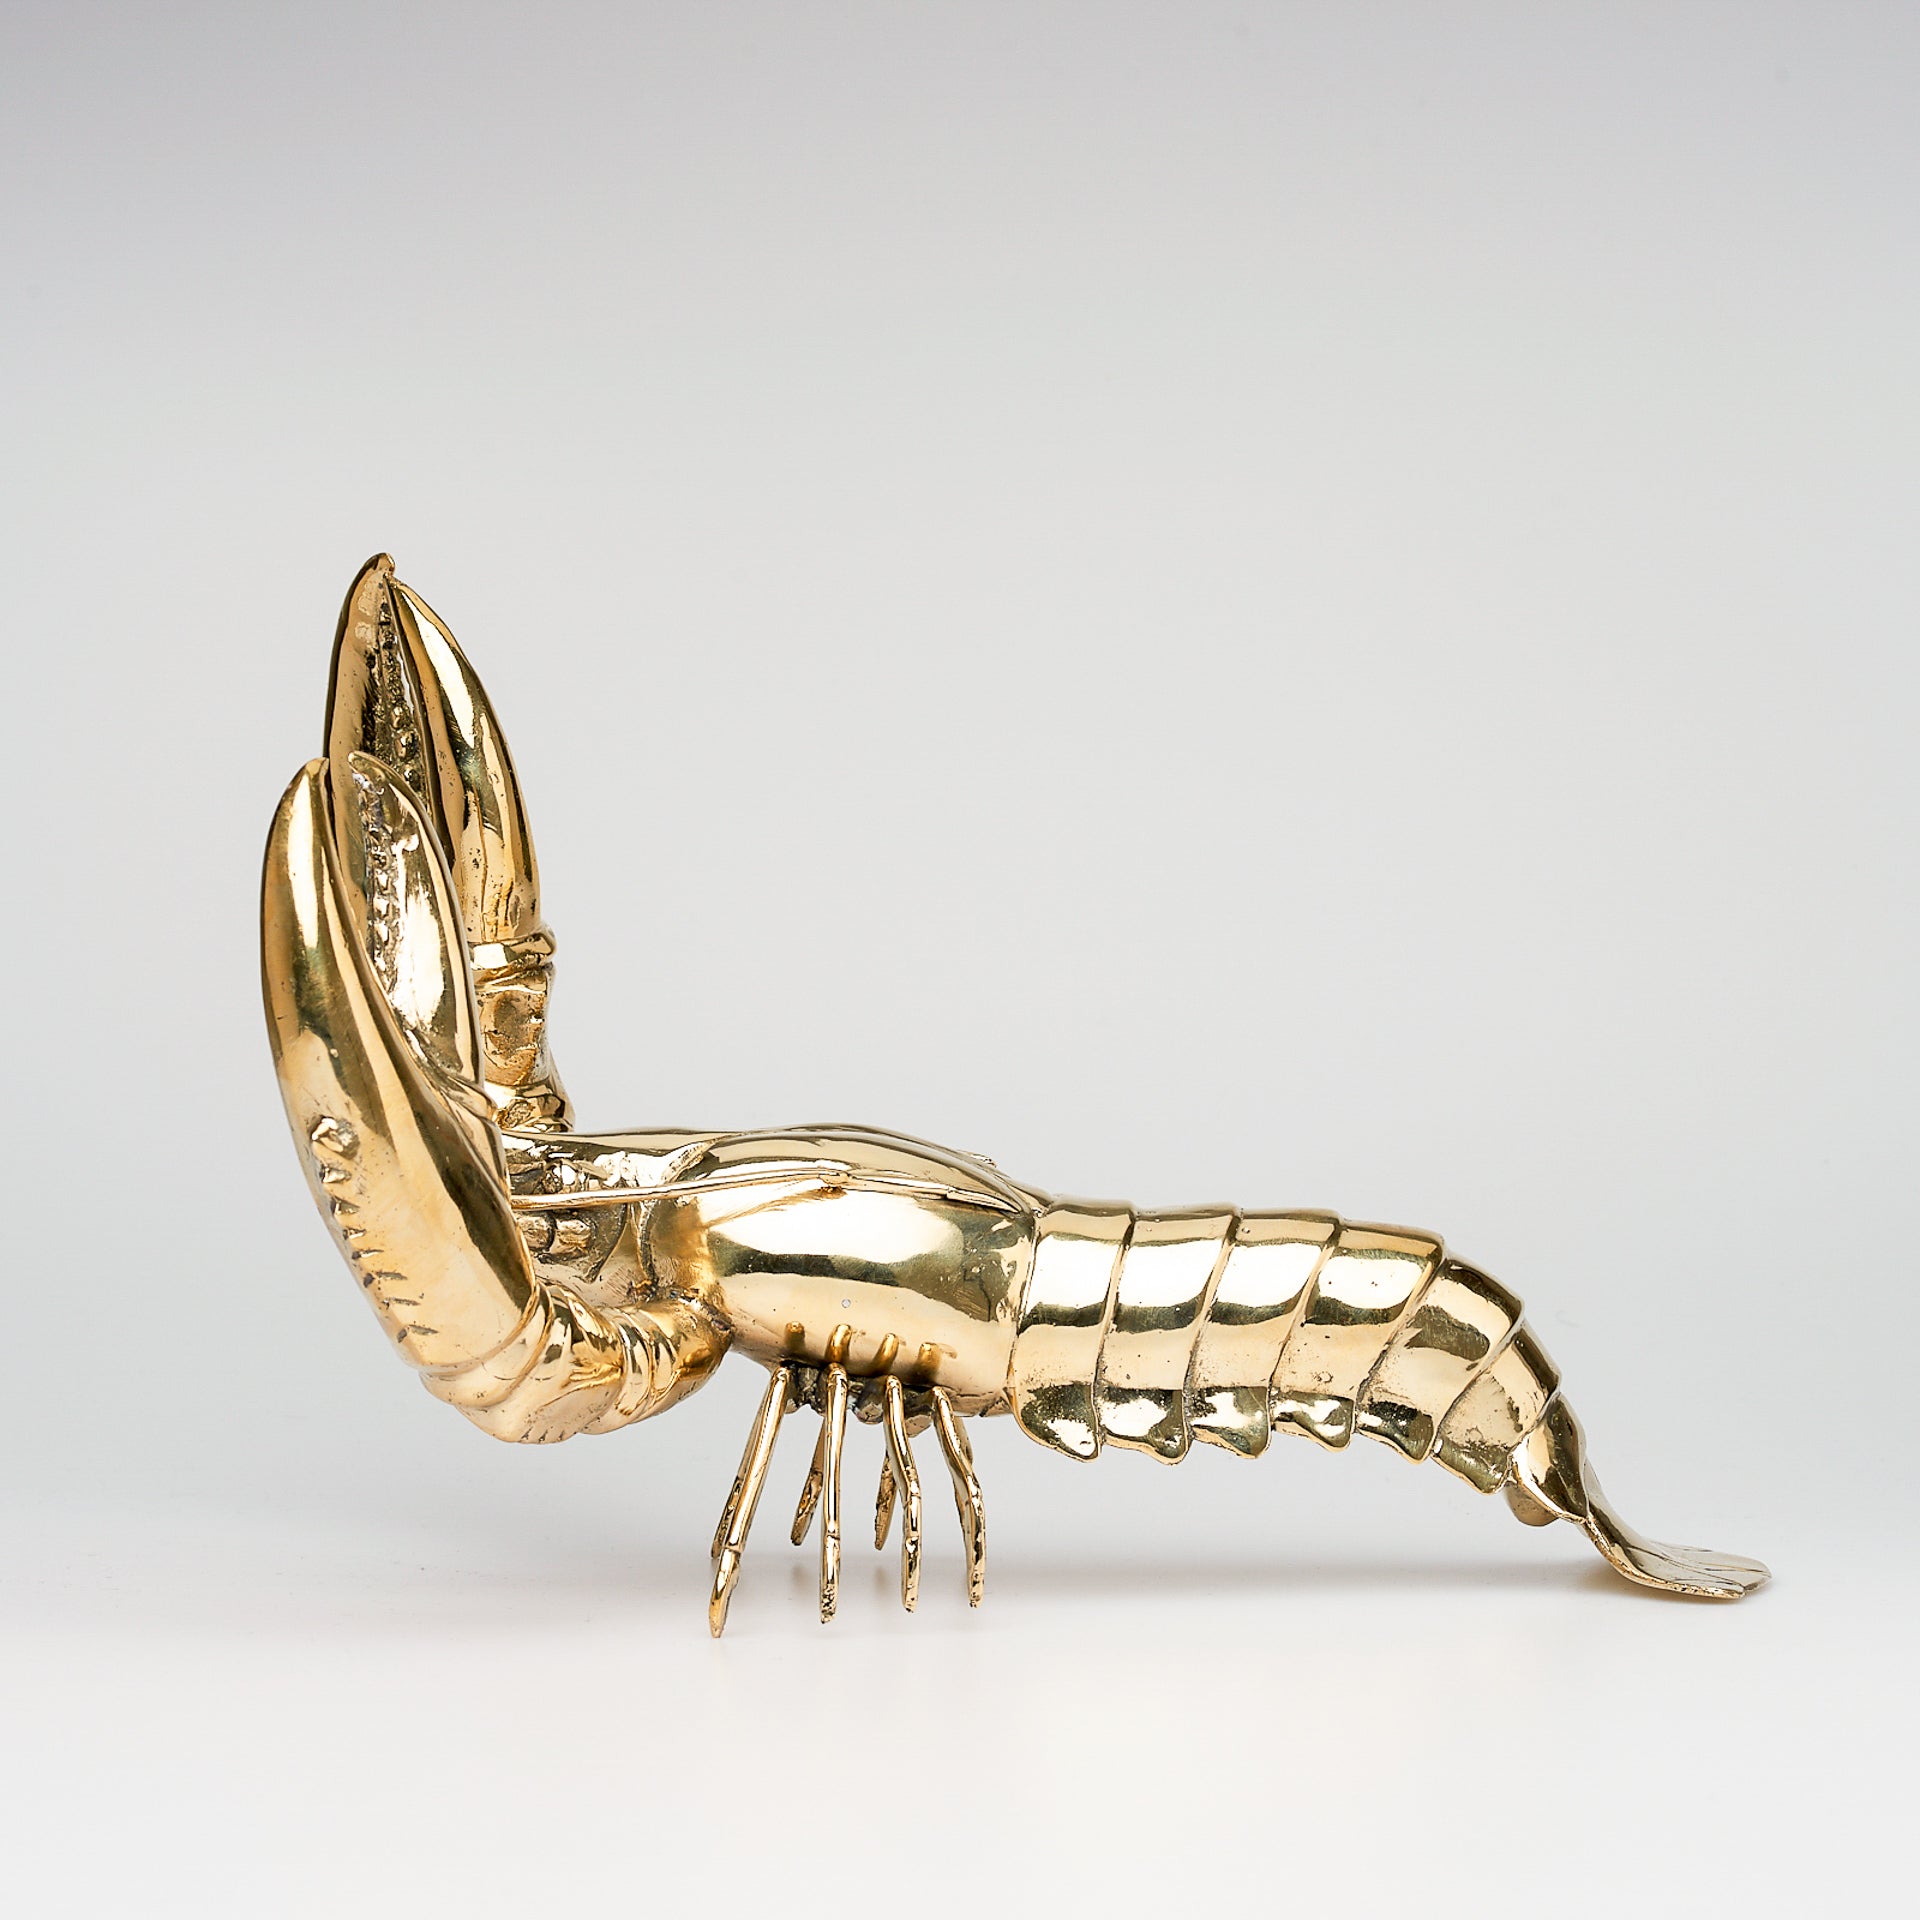 Sooka Lobster in polished bronze, Medium